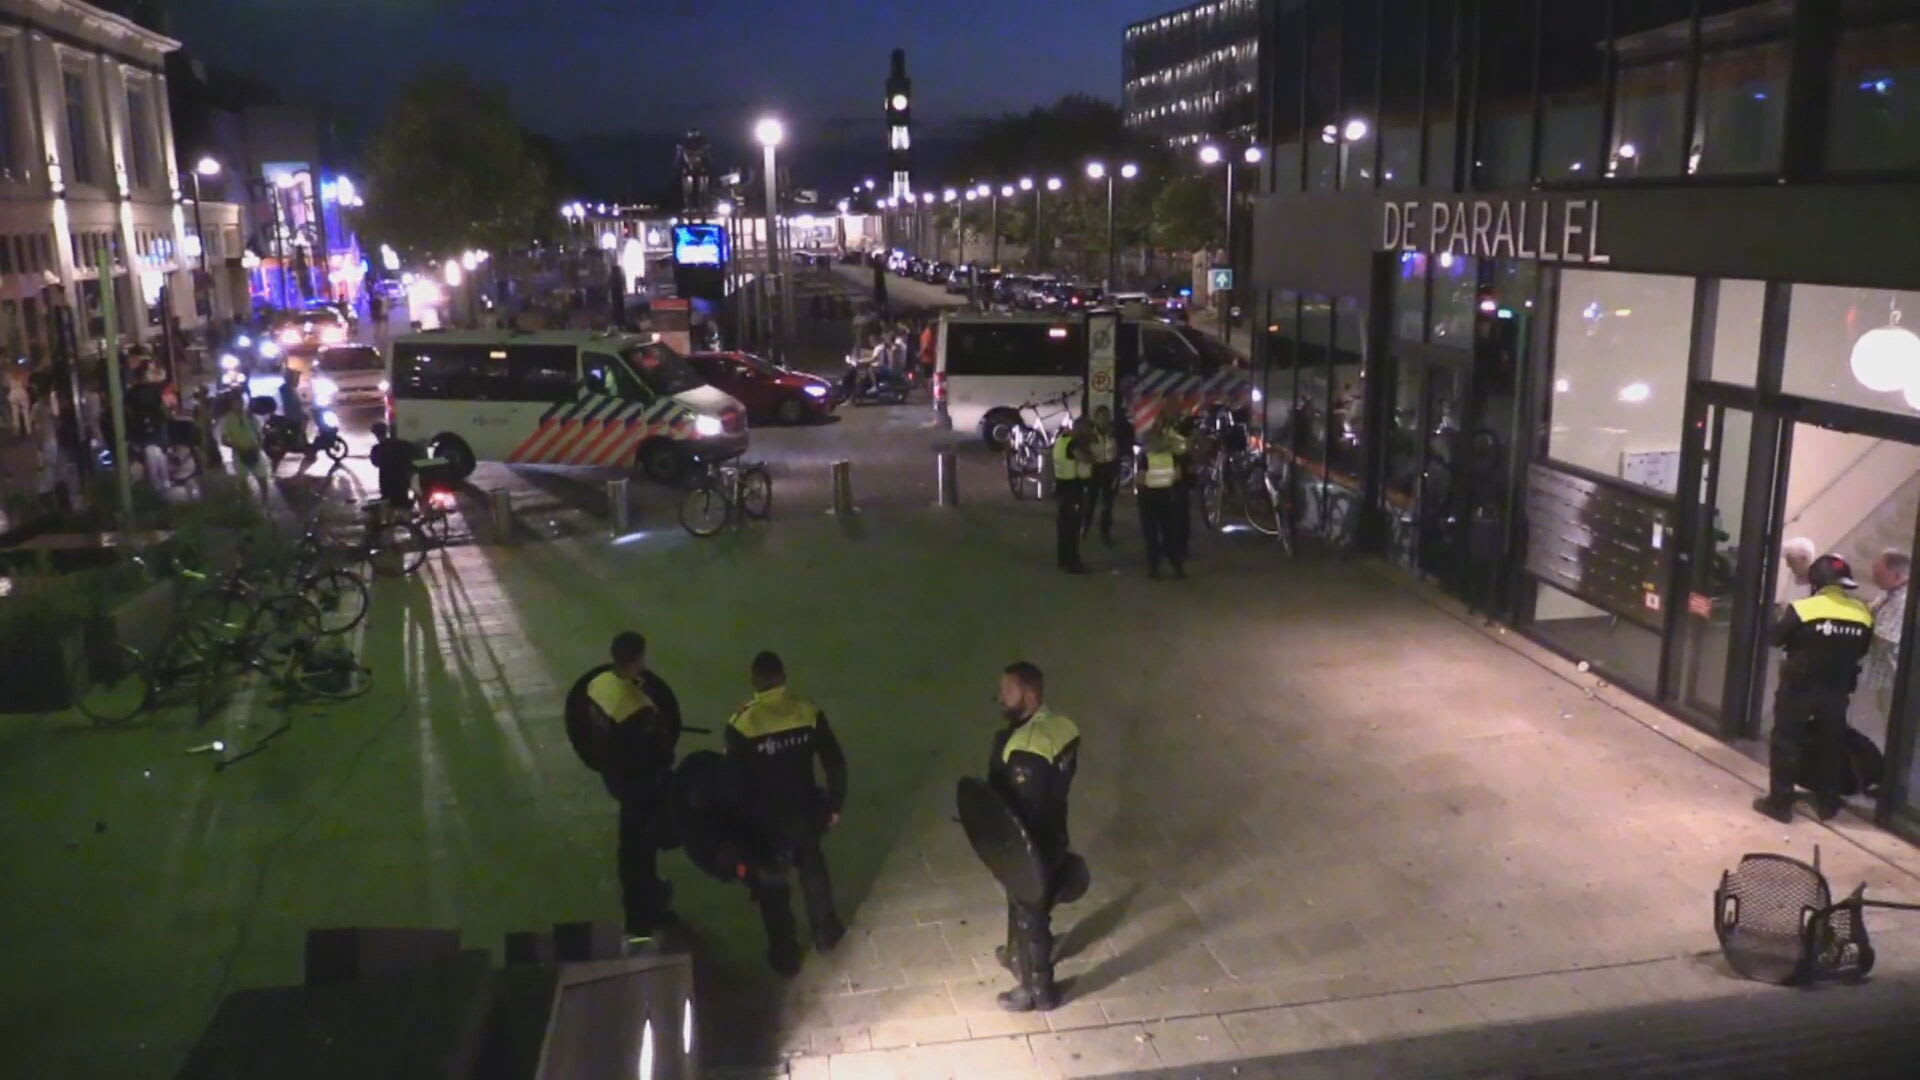 ME in actie bij rellen in Enschede: supporters FC Twente en Fiorentina bekogelen elkaar